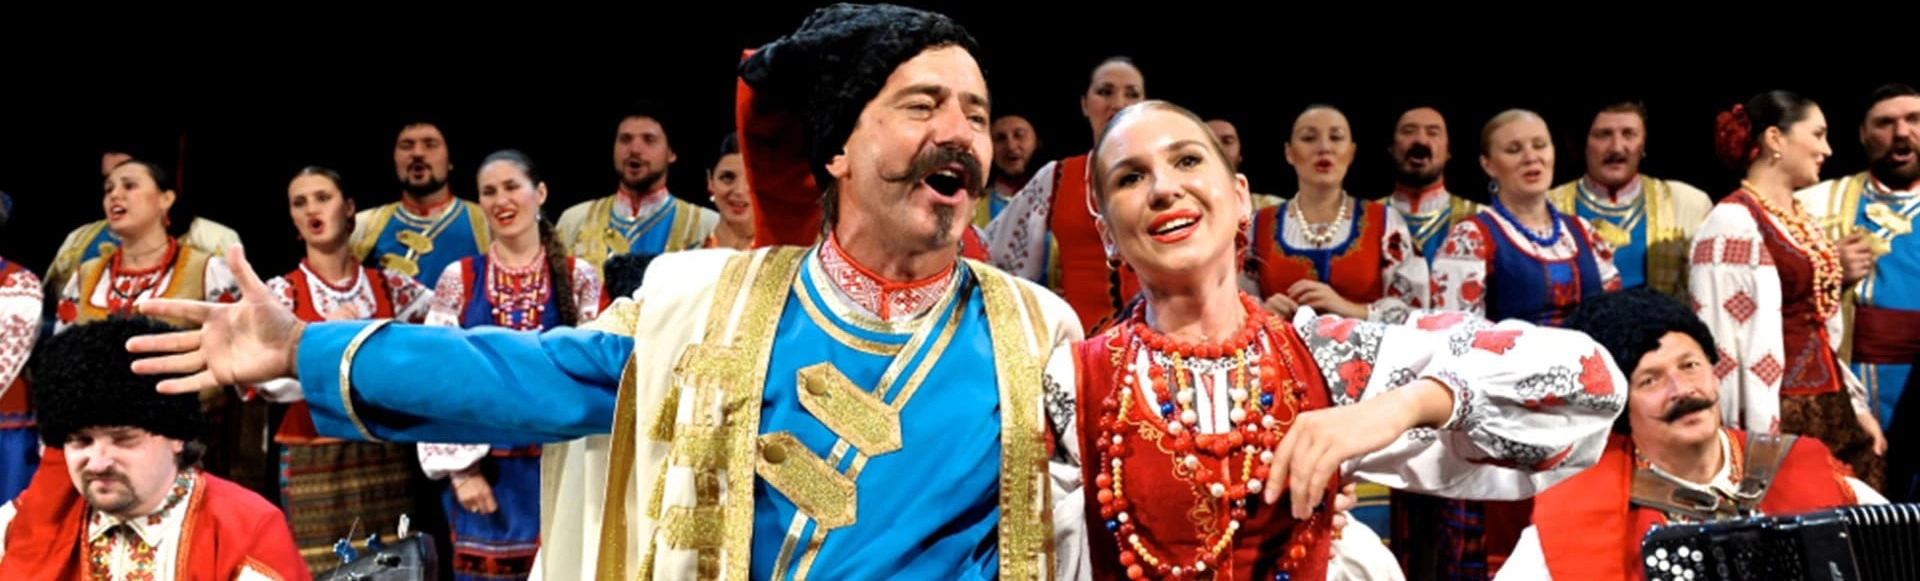 Грандиозное событие в Зимнем театре: Кубанский казачий хор «Русские мы!» готовит волшебное шоу!